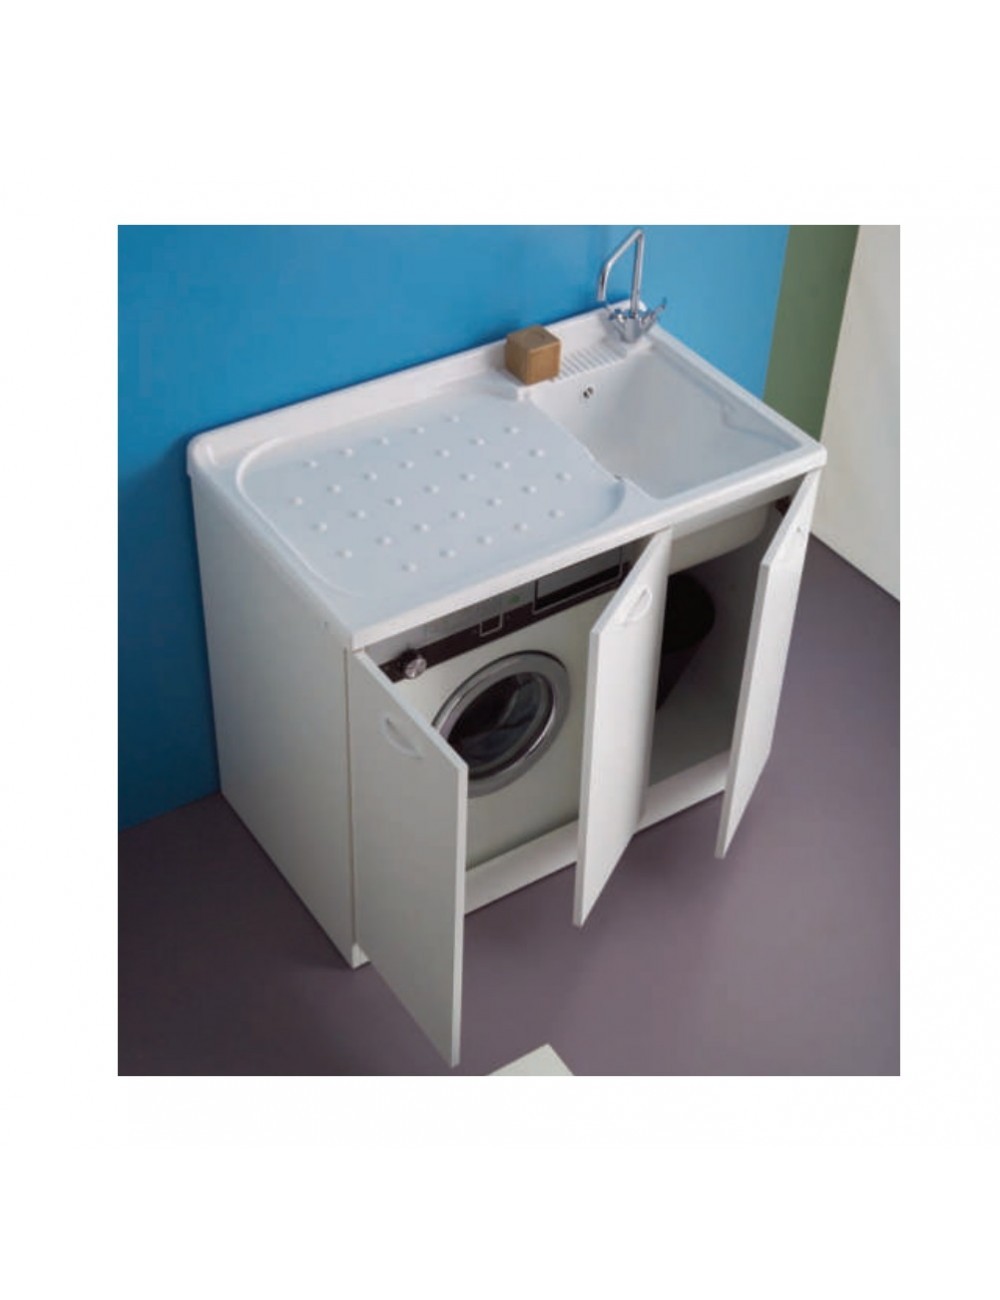 Mobile lavatoio lavanderia copri lavatrice Lady cm 124x60 bianco sx